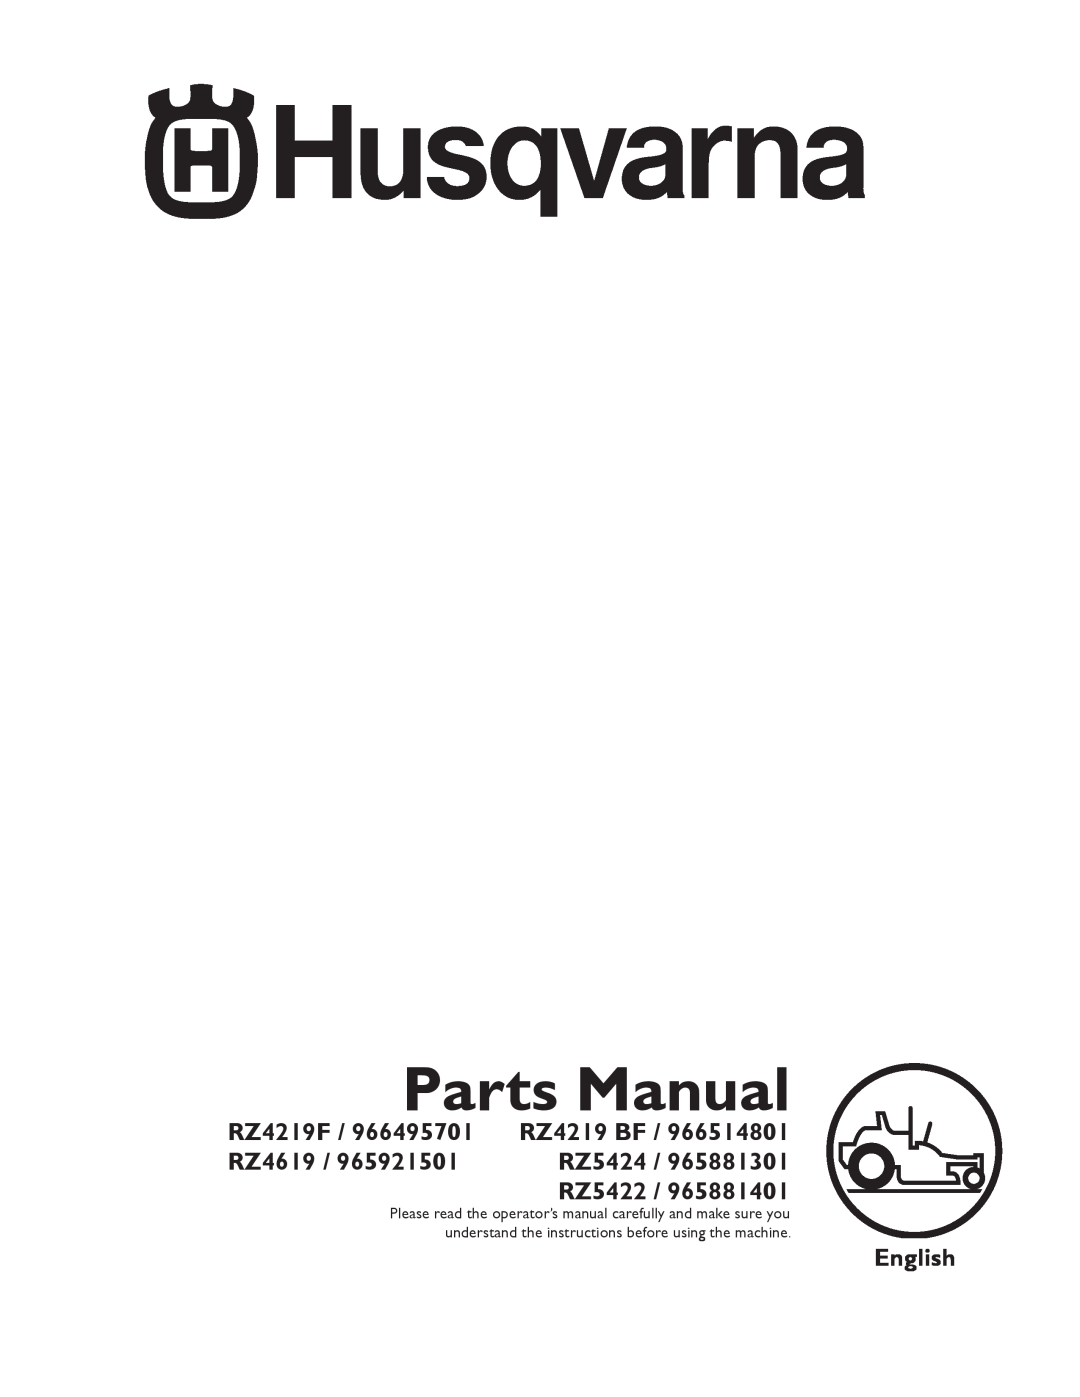 Husqvarna 965881301, 965881401, 965921501 manual Parts Manual, RZ4219F, RZ4619, RZ5424, RZ5422, English, RZ4219 BF 